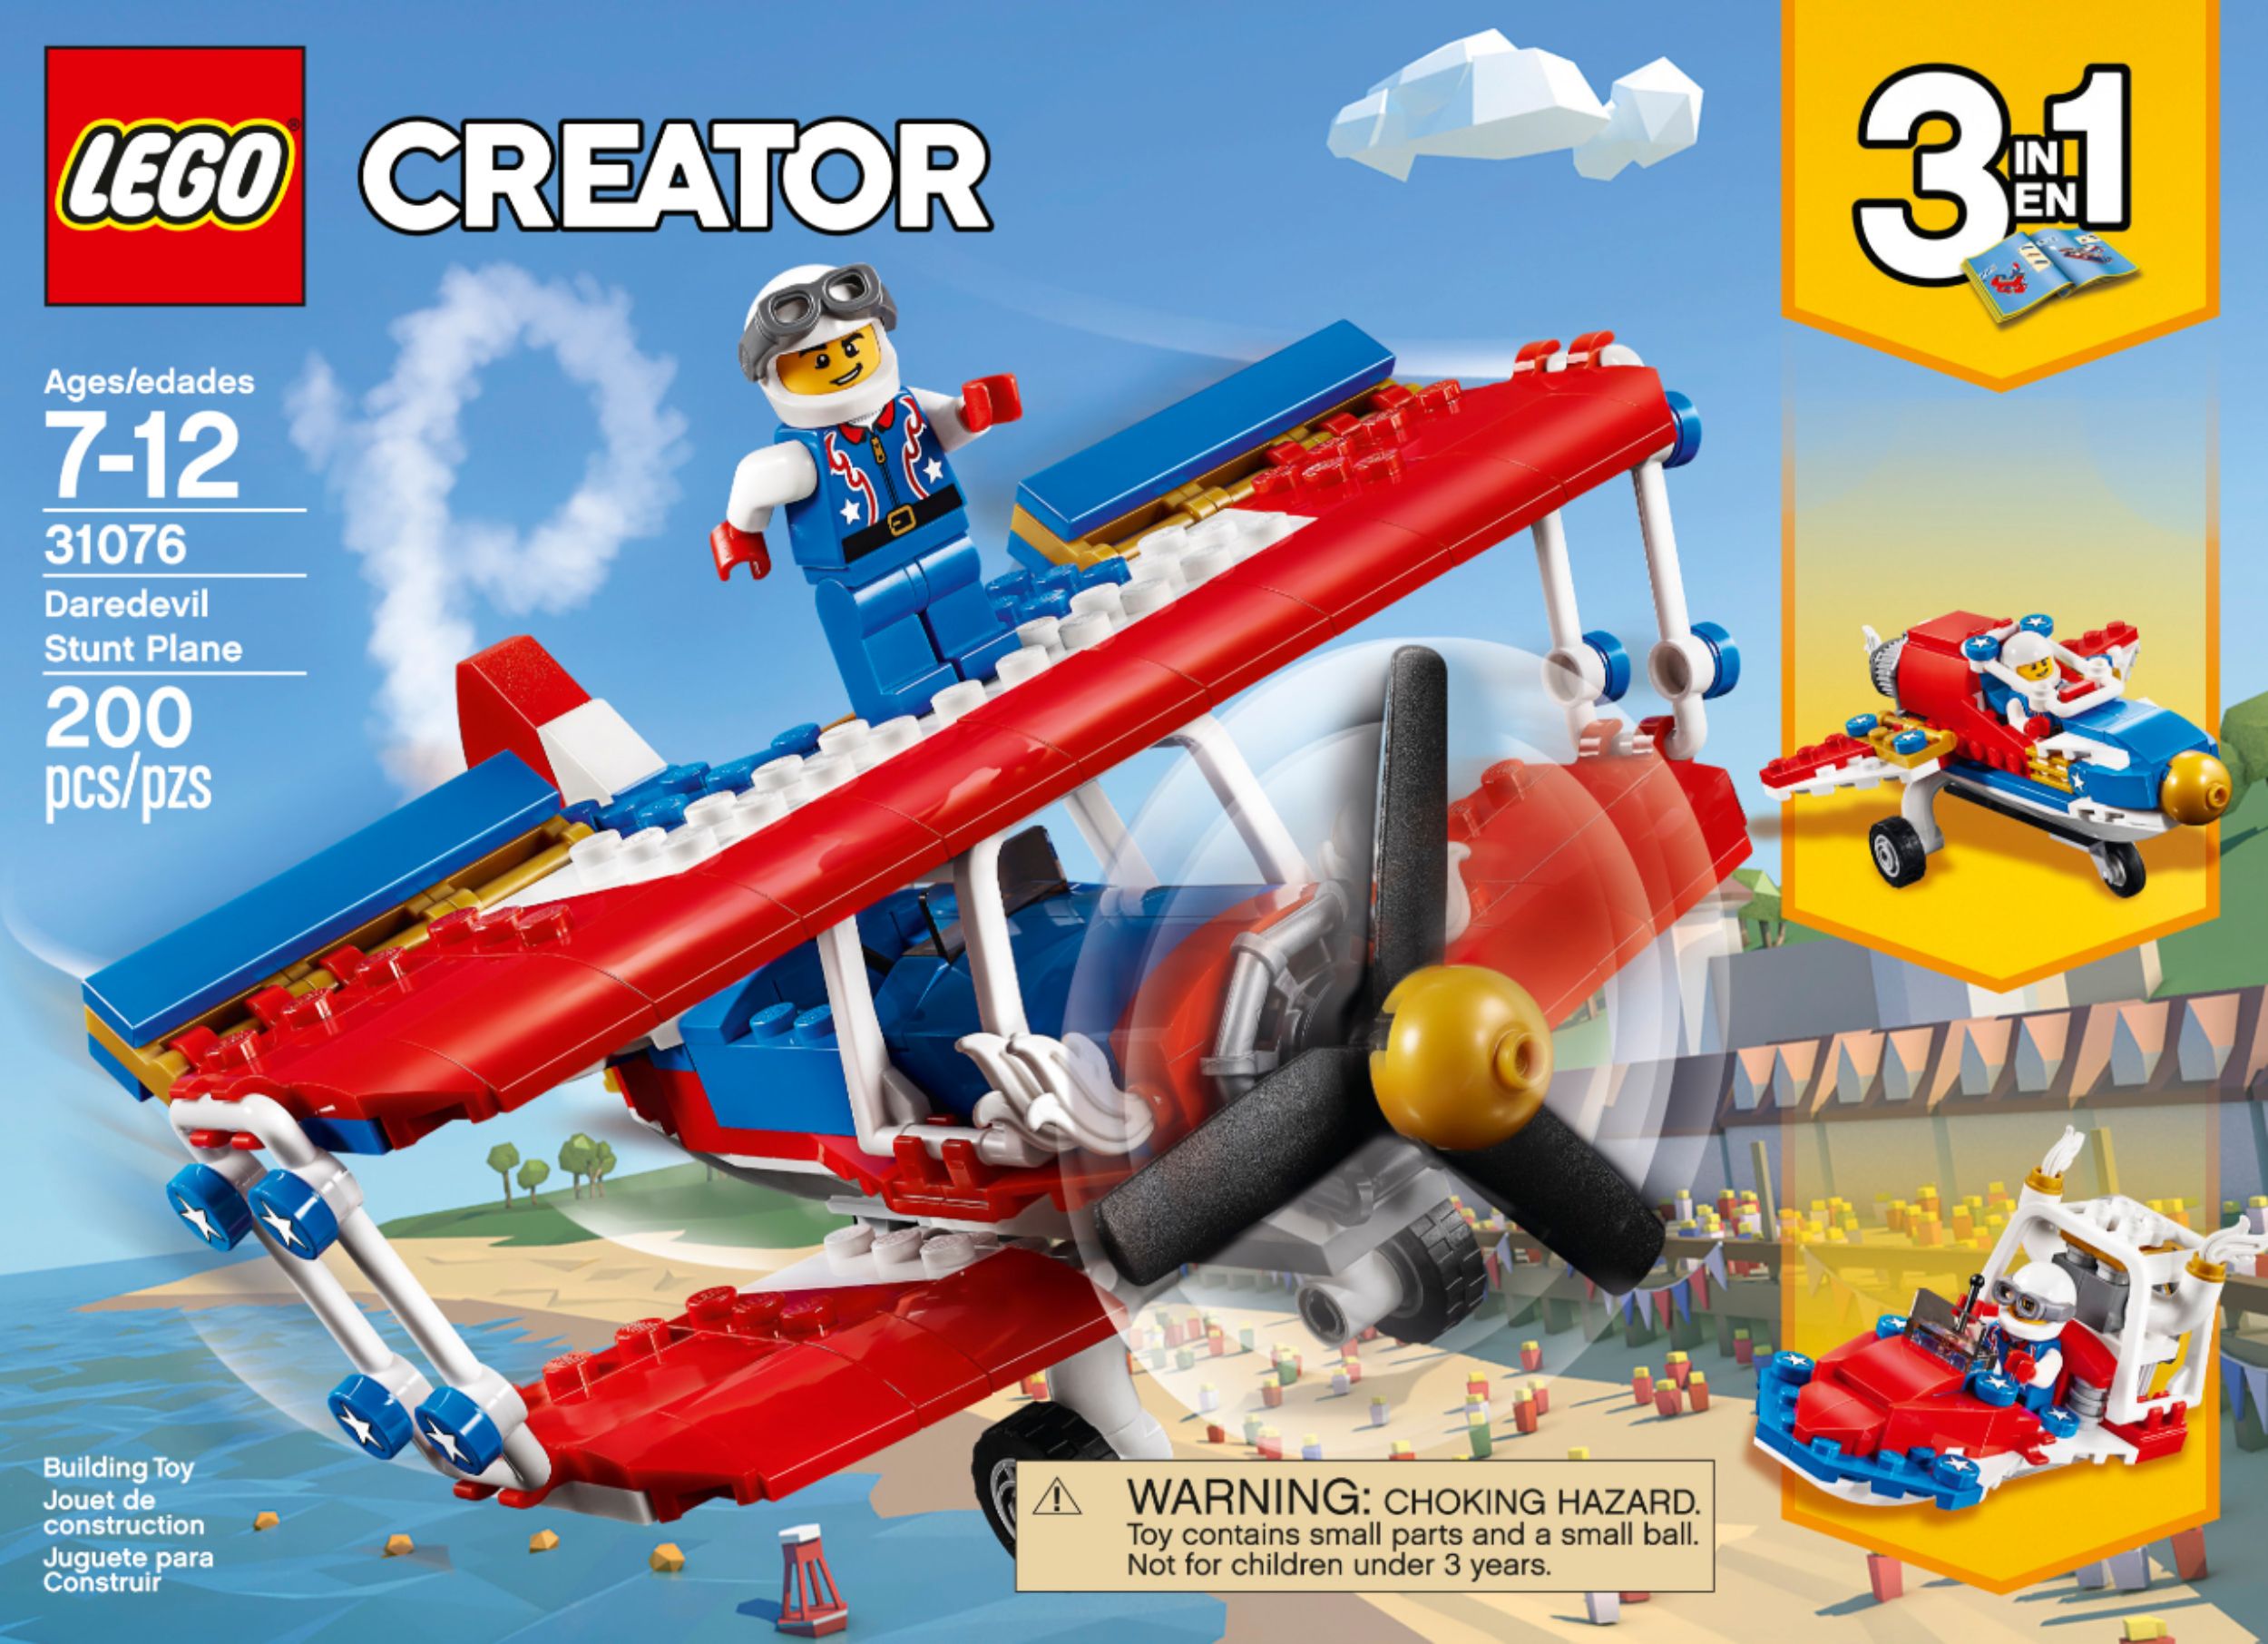 Best Buy: LEGO Creator 3-in-1 Daredevil Stunt Plane 6210171